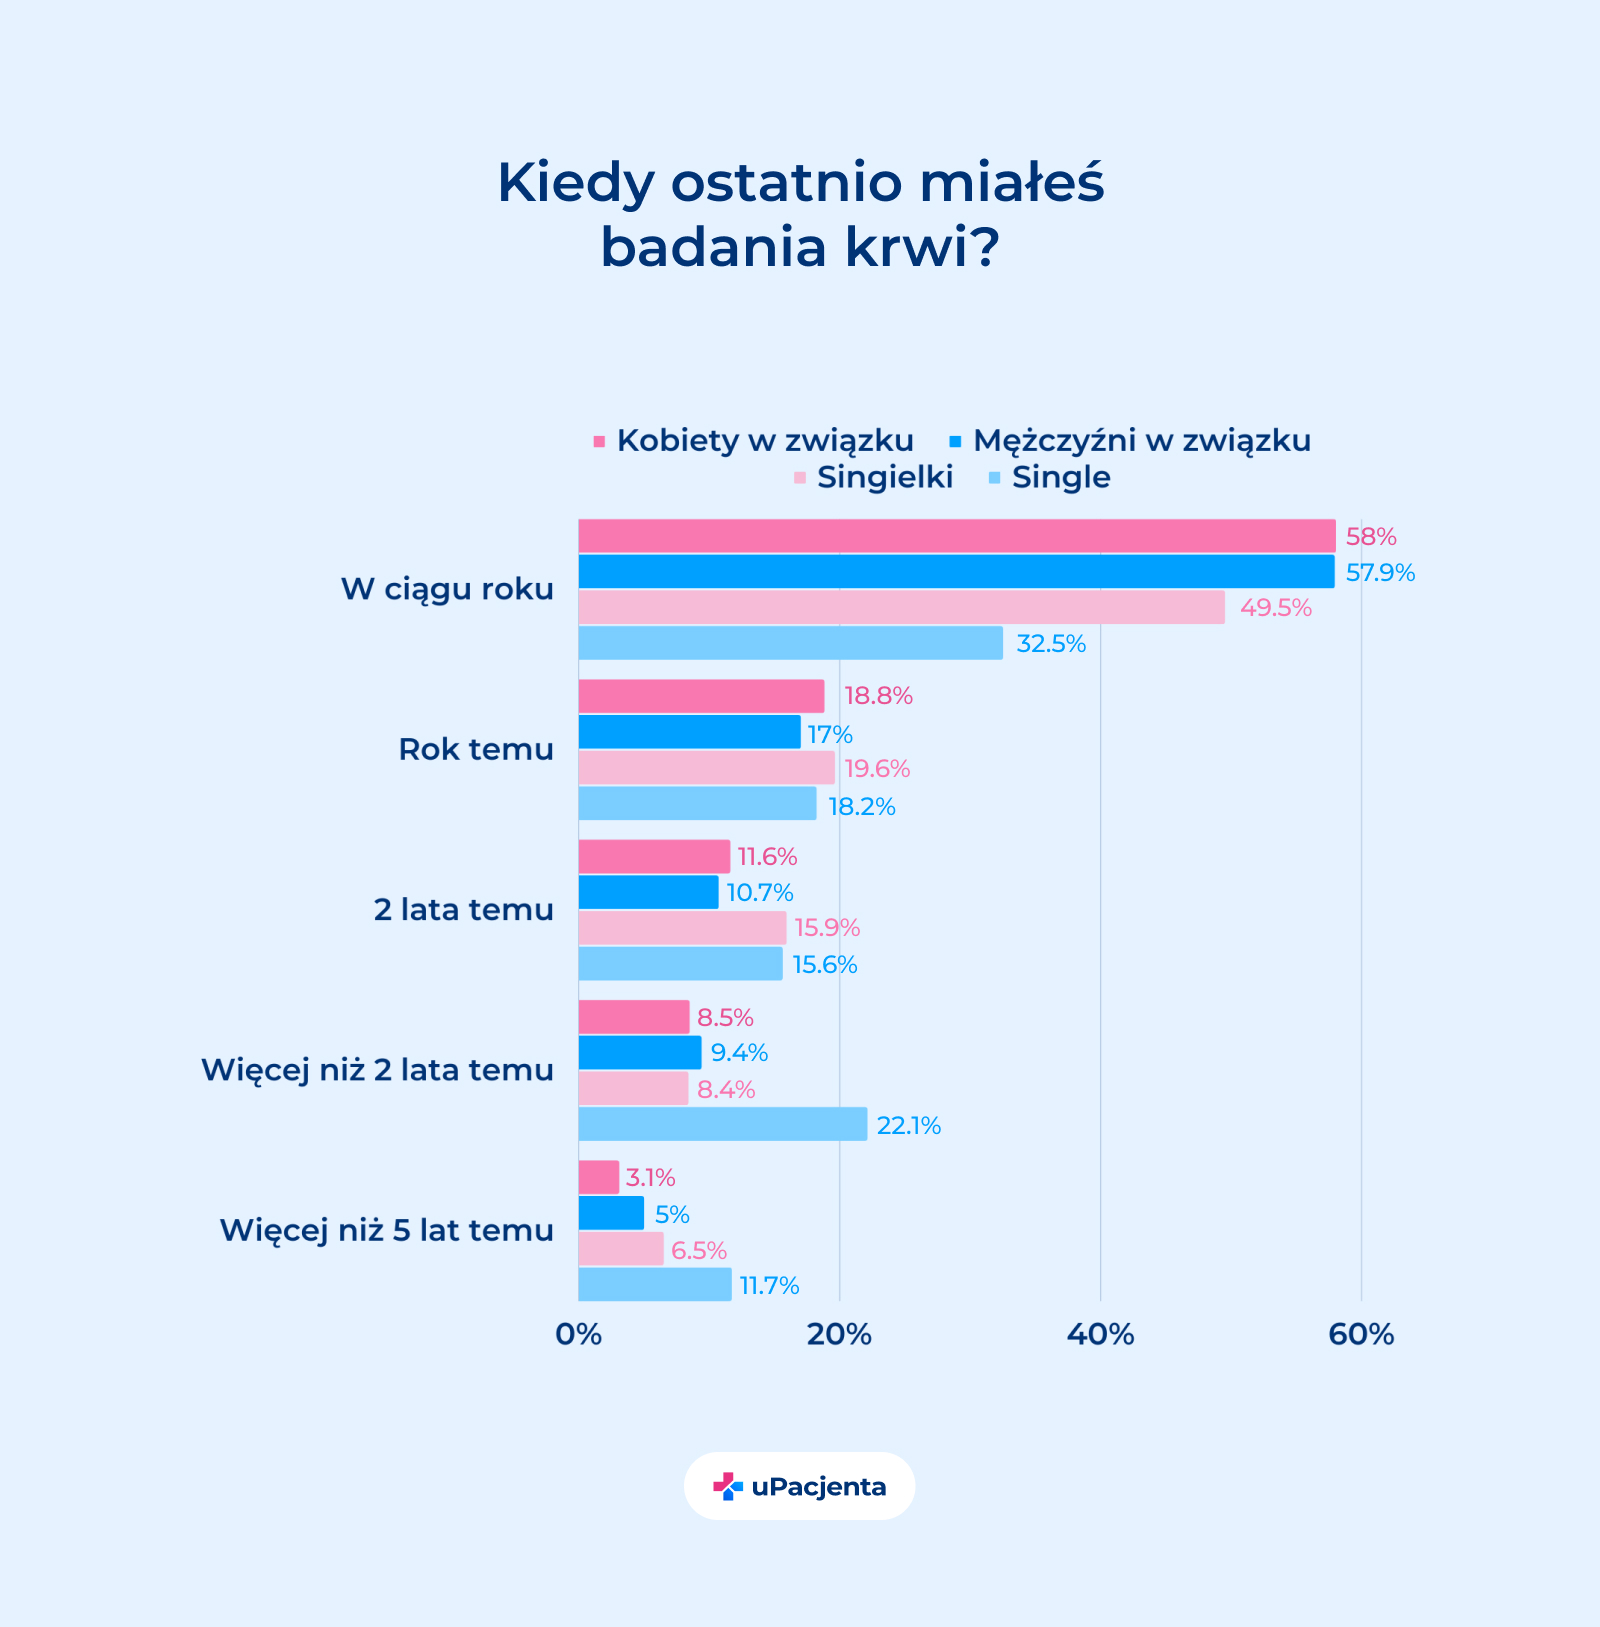 zdrowie mężczyzn w Polsce w rękach kobiet - Kiedy ostatnio miałeś badania krwi? wykres